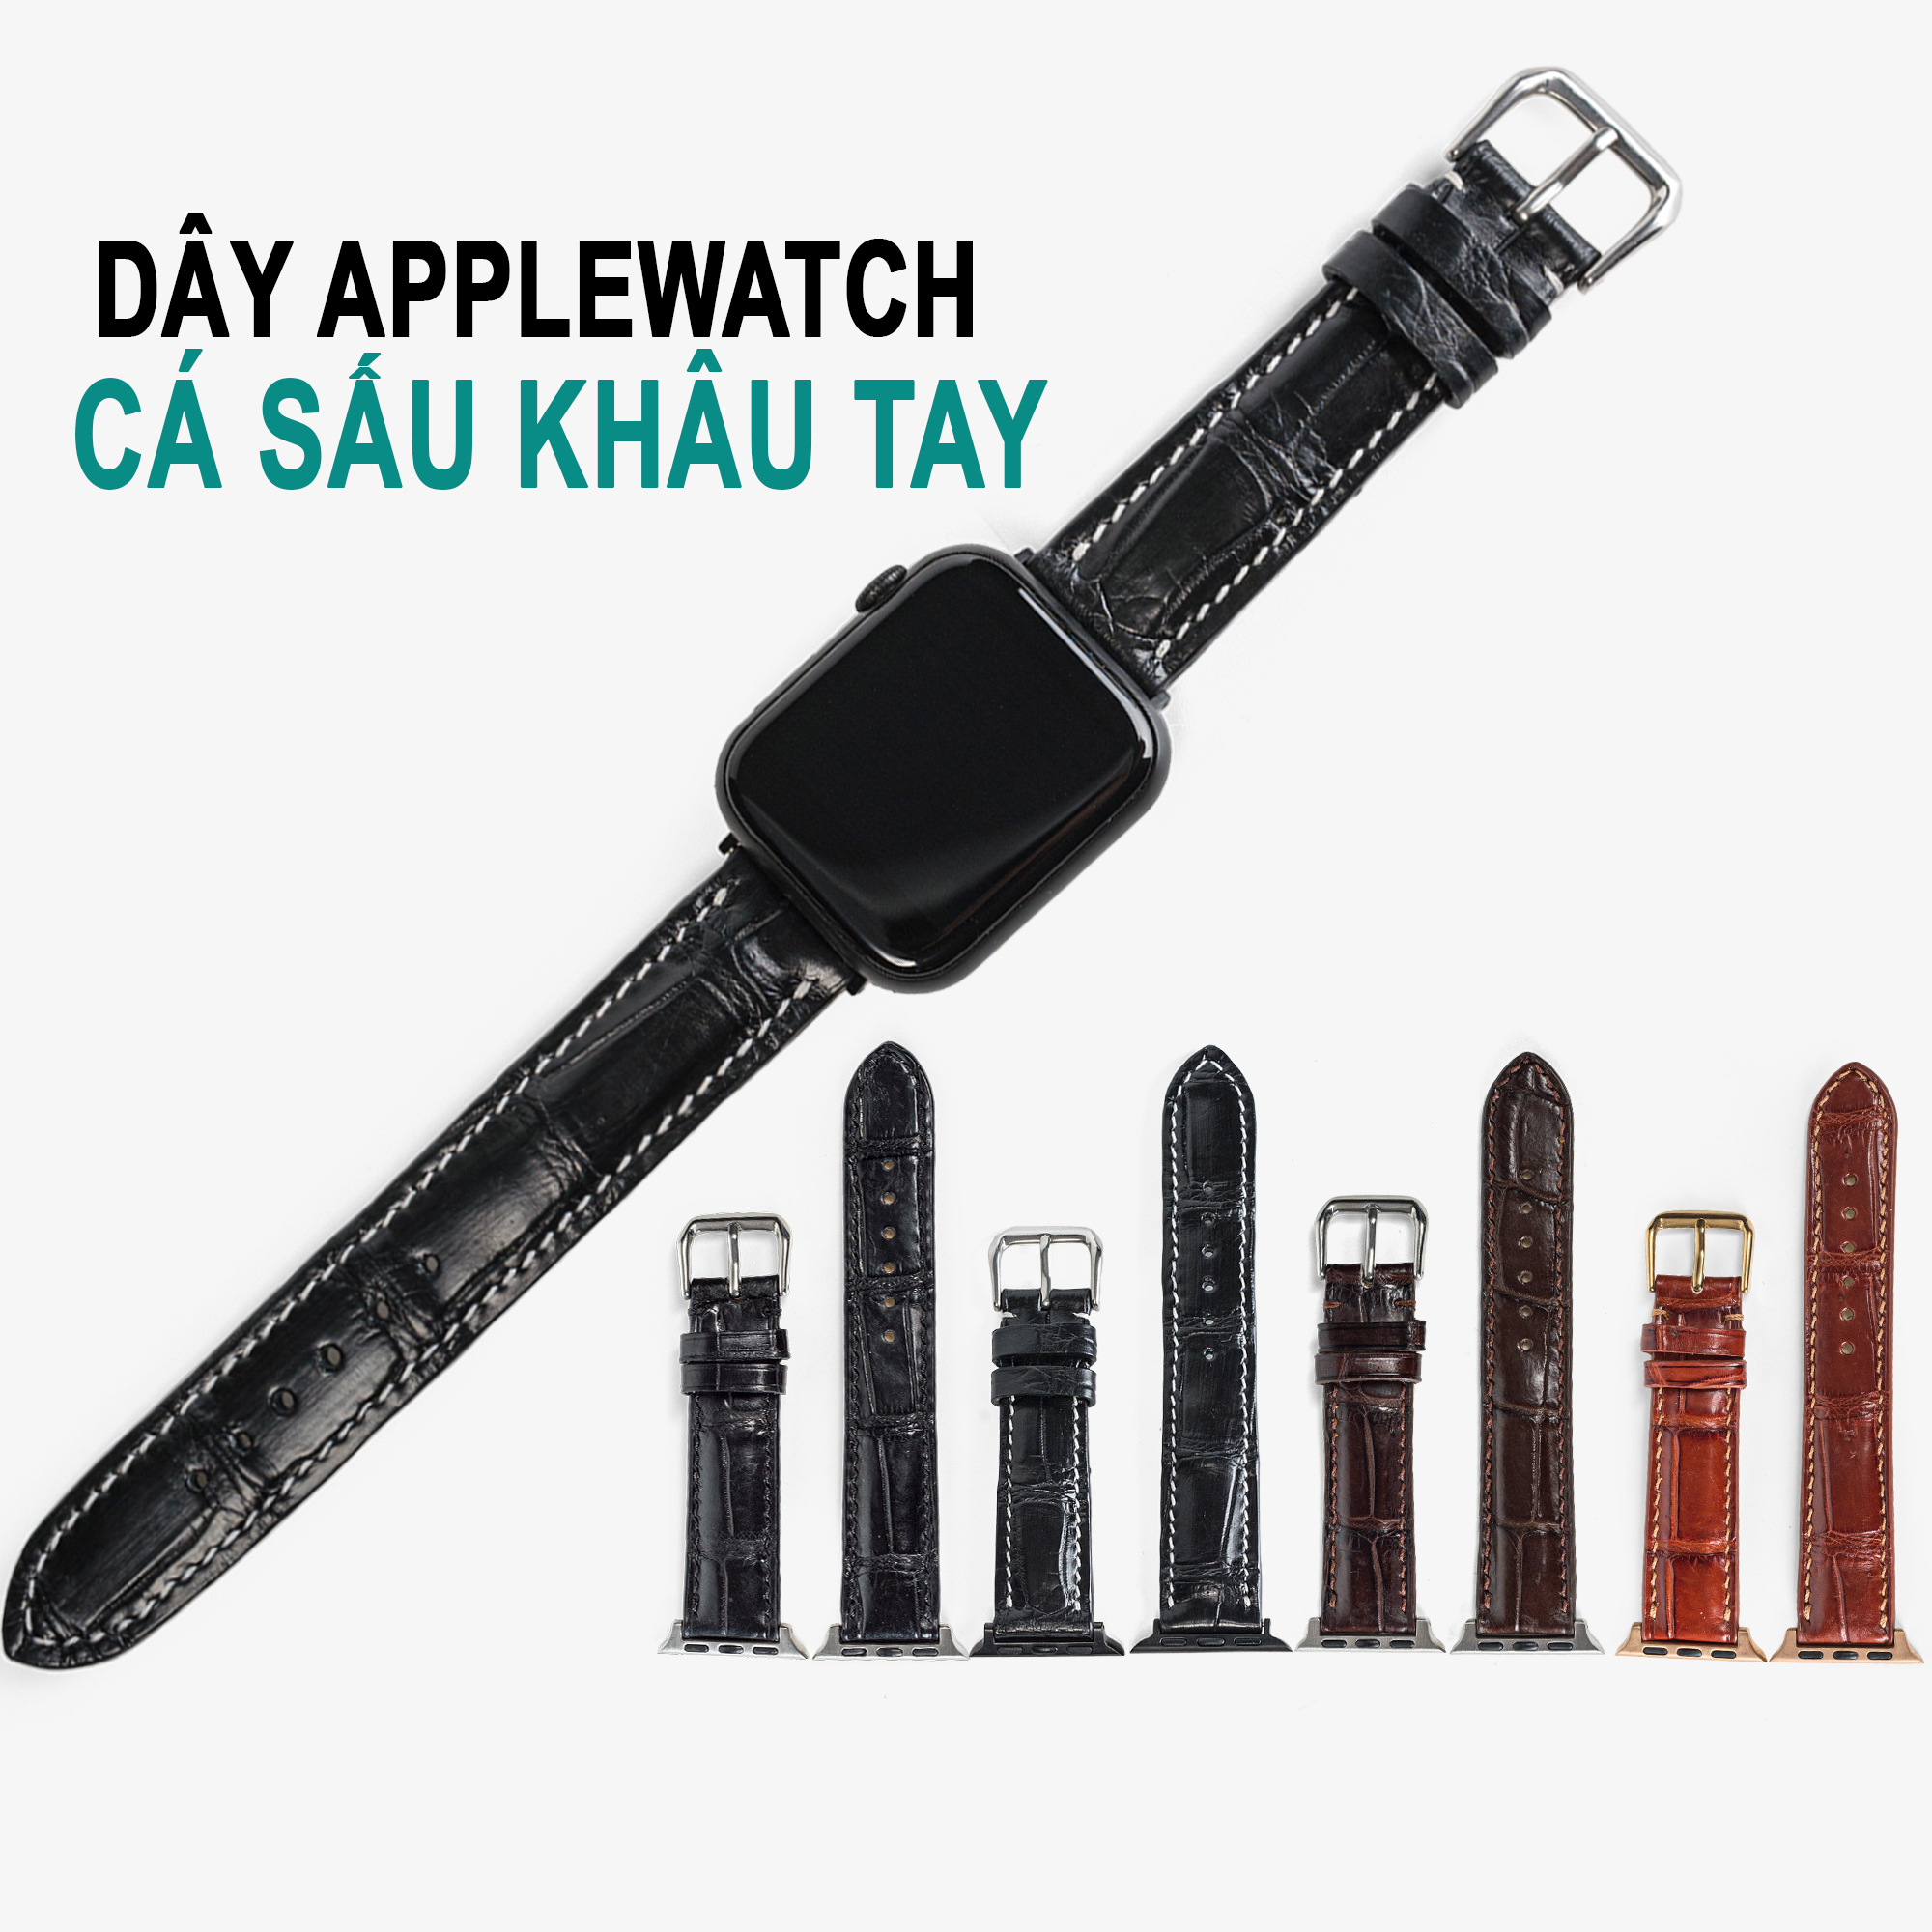 Dây đồng hồ dành cho AW da cá sấu đốt tre D108 - Da thật khâu tay thủ công cao cấp